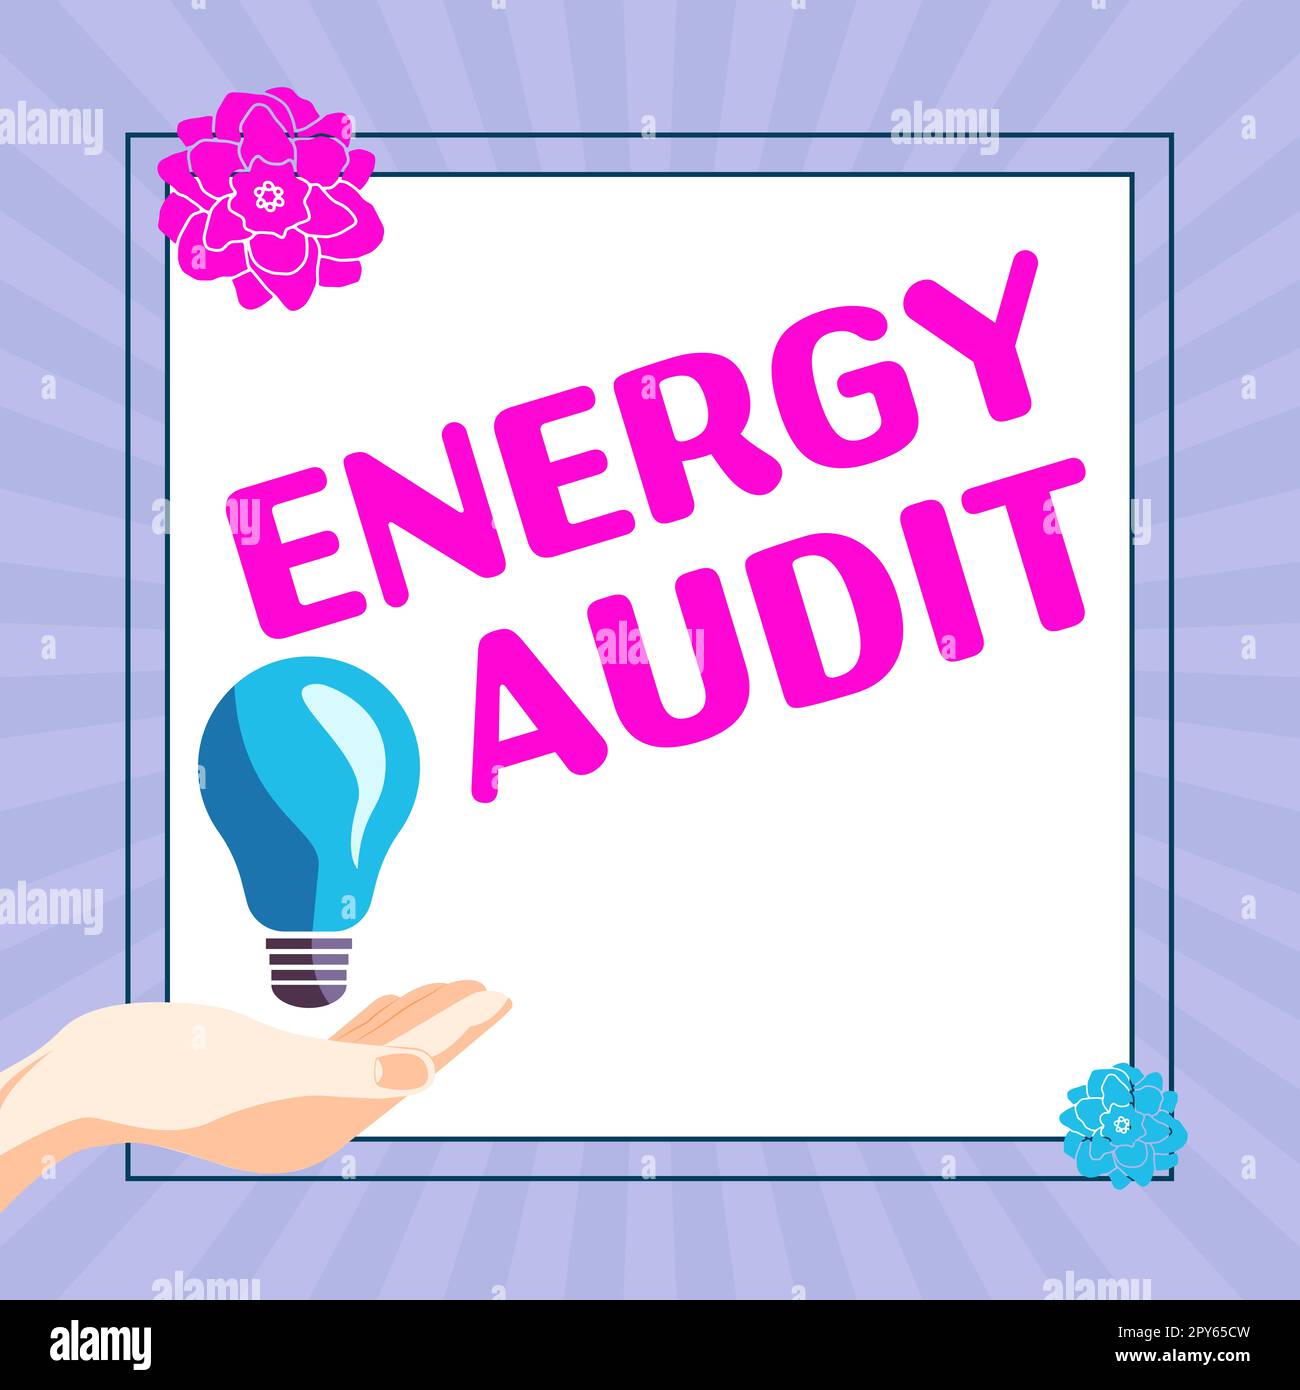 Scrittura del testo visualizzato Energy Audit. Parola per la valutazione del fabbisogno energetico e dell'efficienza di un edificio Foto Stock